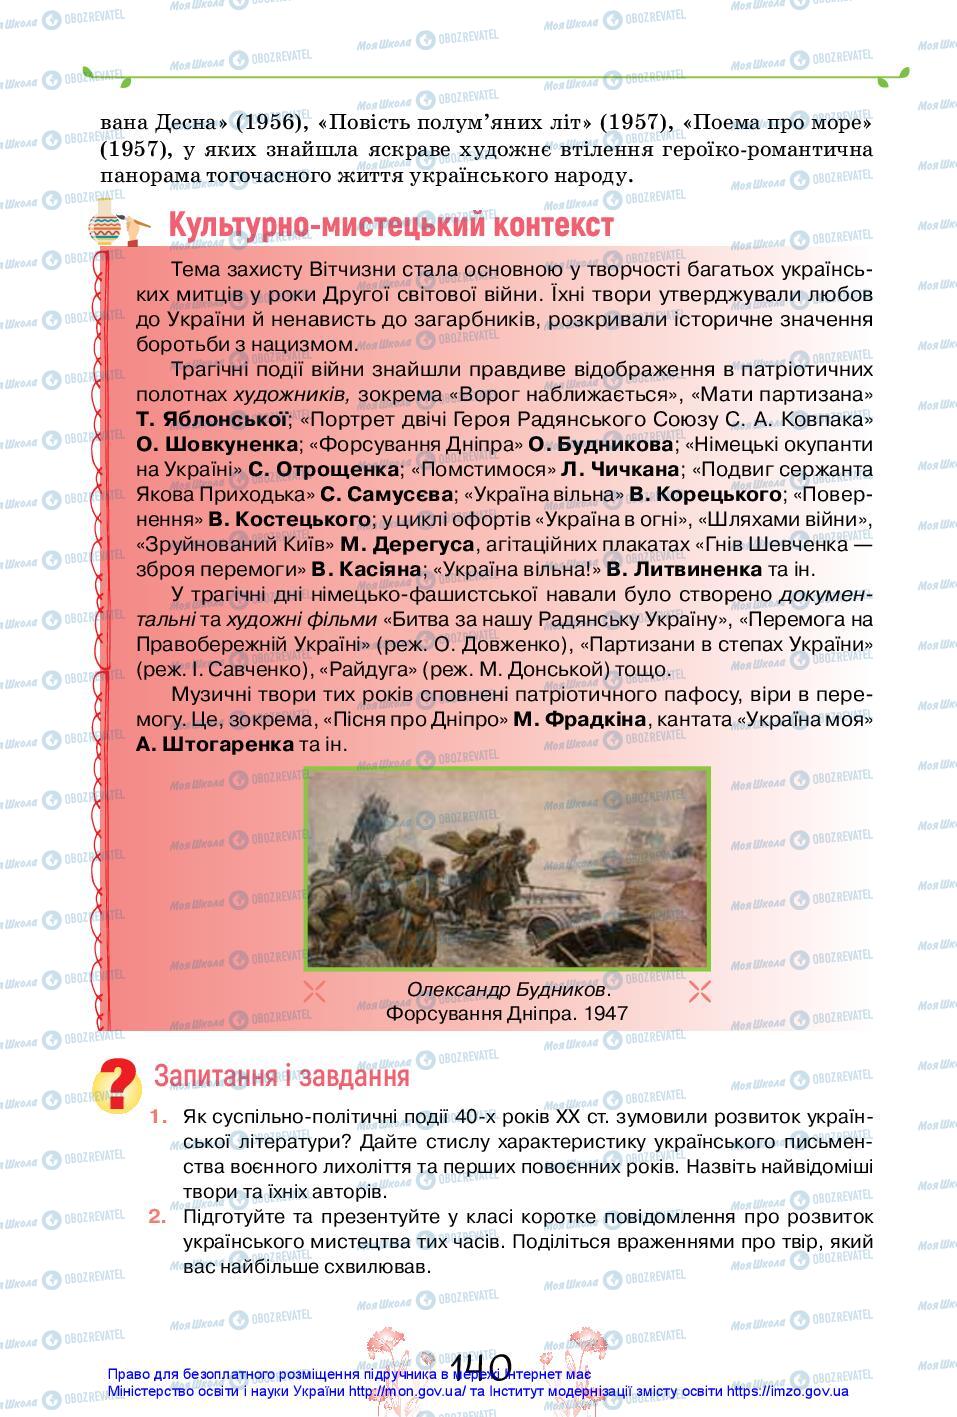 Учебники Укр лит 11 класс страница 140